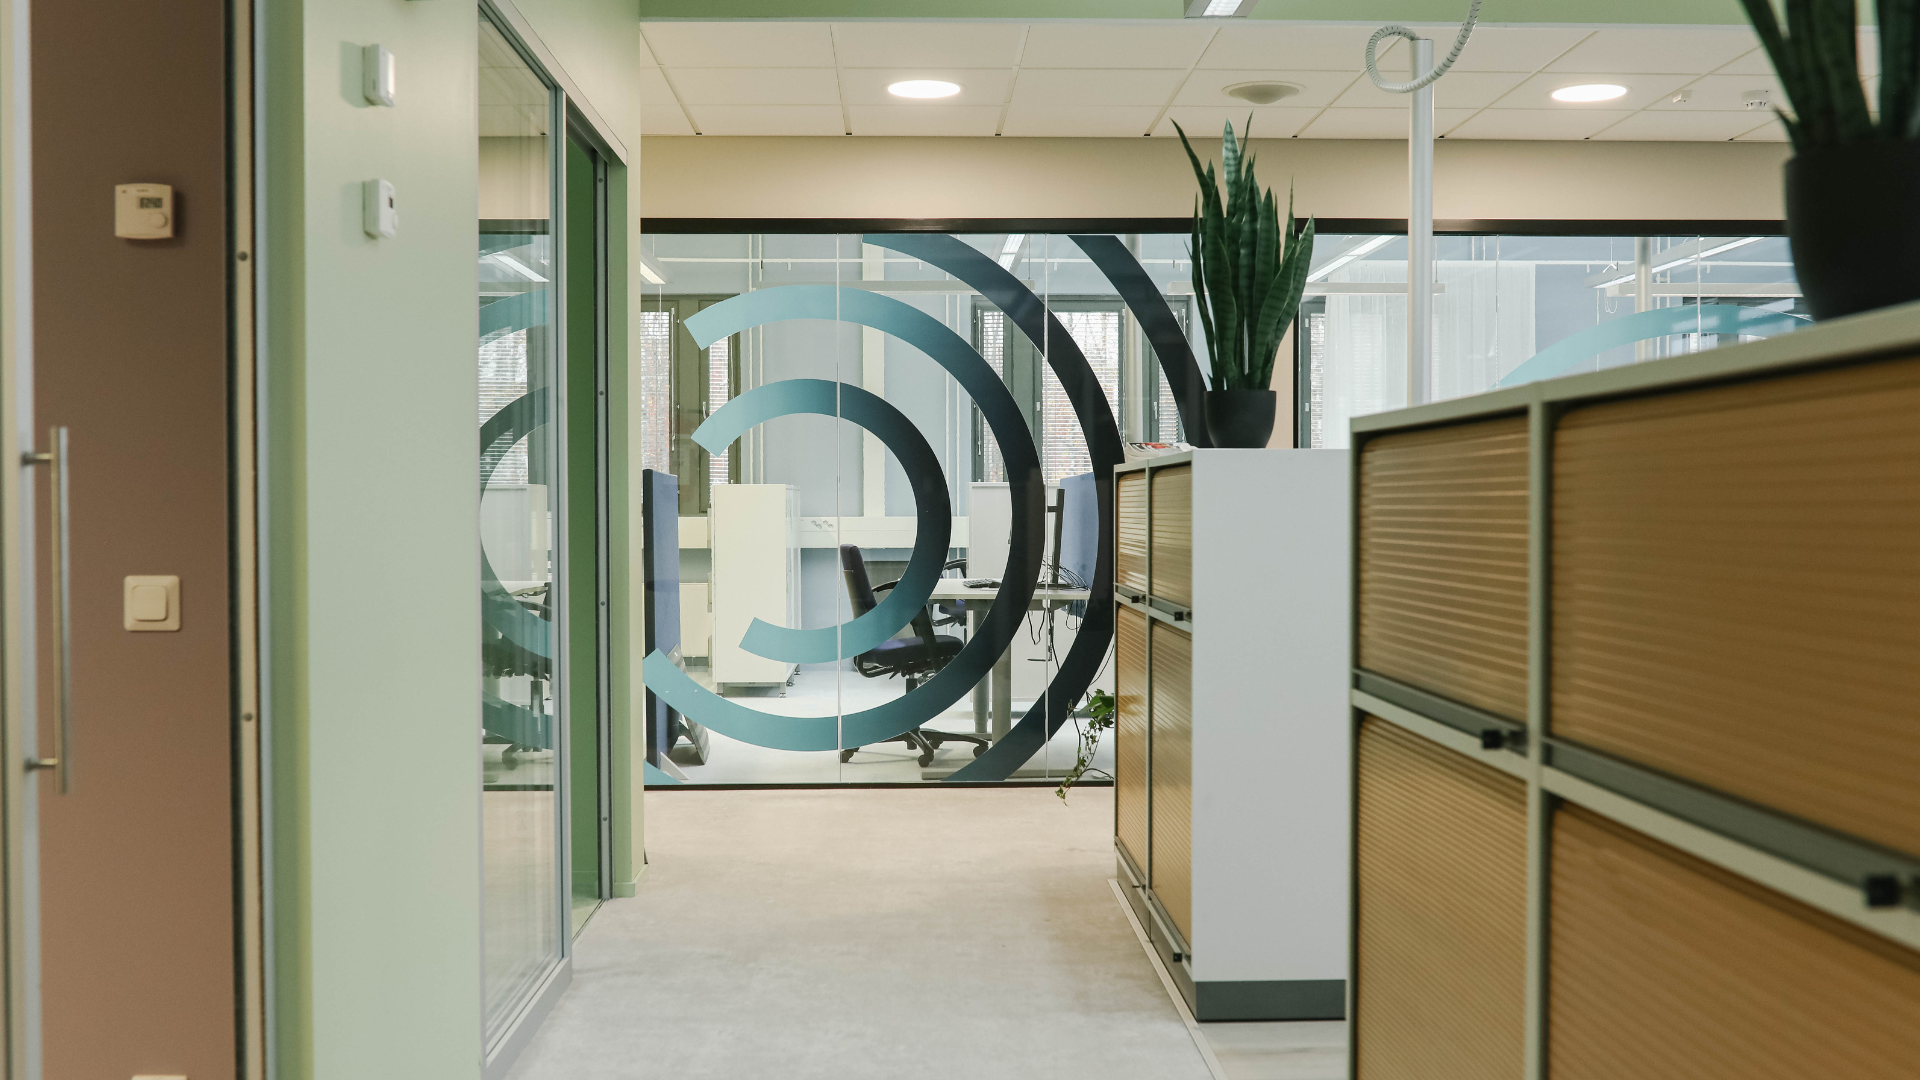 Tässä kuvassa on Meitan Lappeenrannan toimiston teipattu lasinen väliseinä Meitan logolla sekä toimistokäytävää kaappeineen